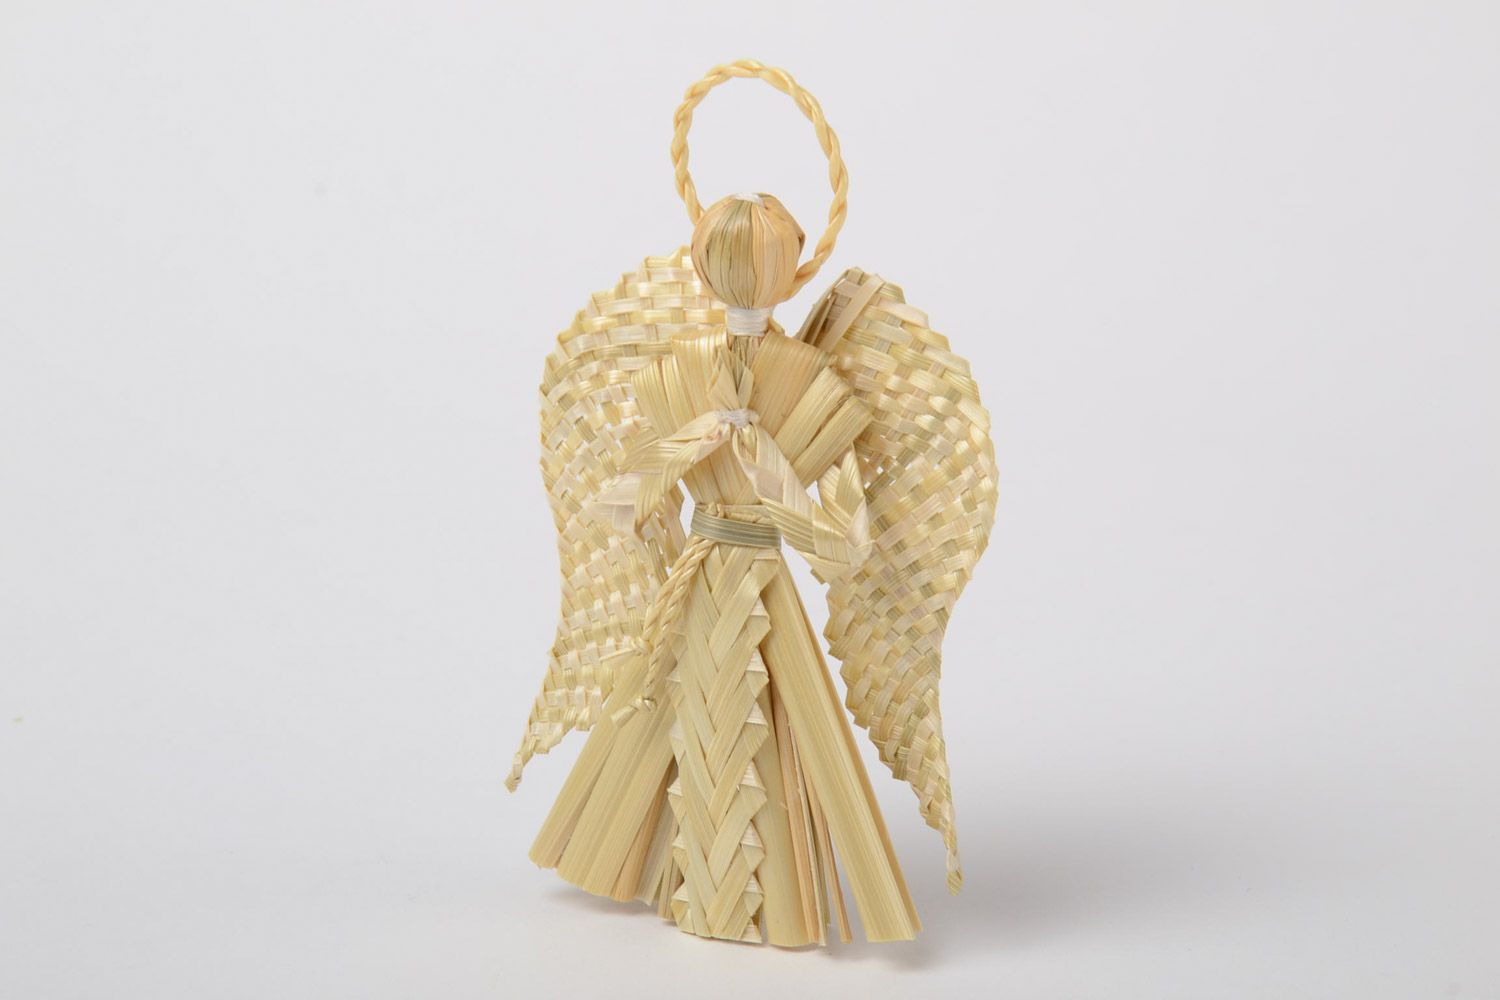 Интерьерная подвеска плетеная из соломы ручной работы Ангел-хранитель на стену фото 2